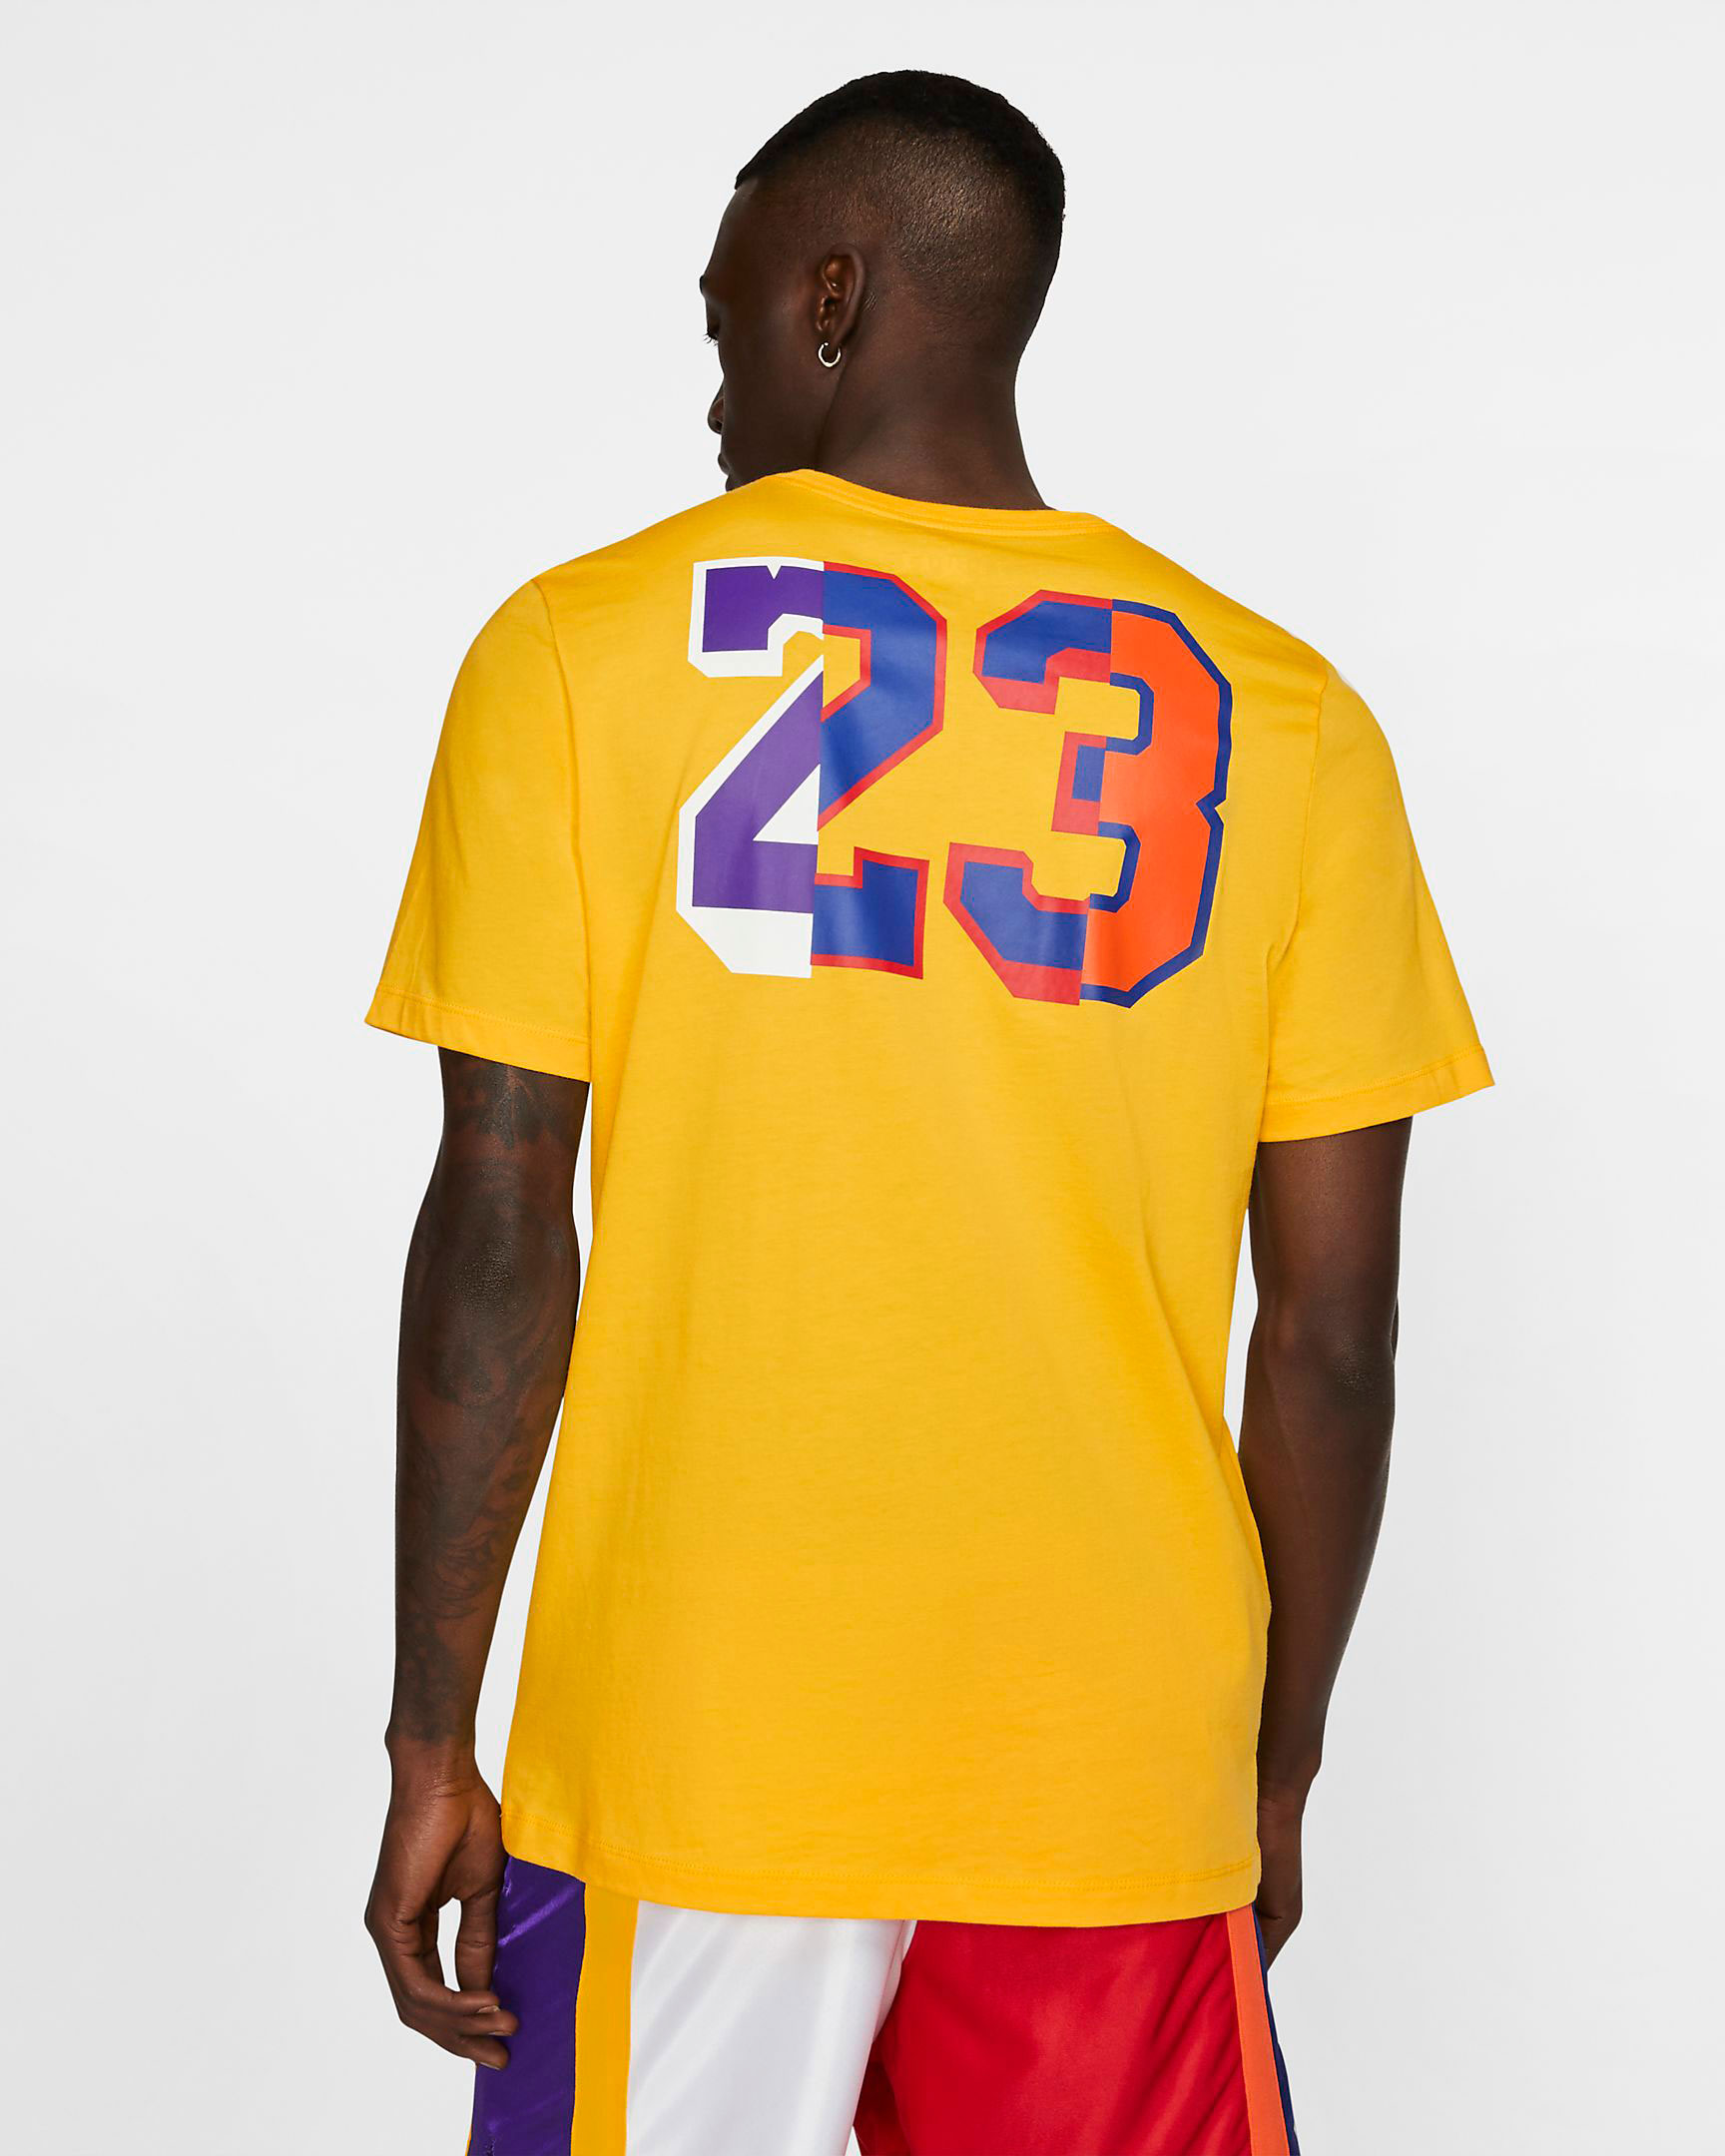 lakers-jordan-13-rivals-tee-shirt-yellow-2